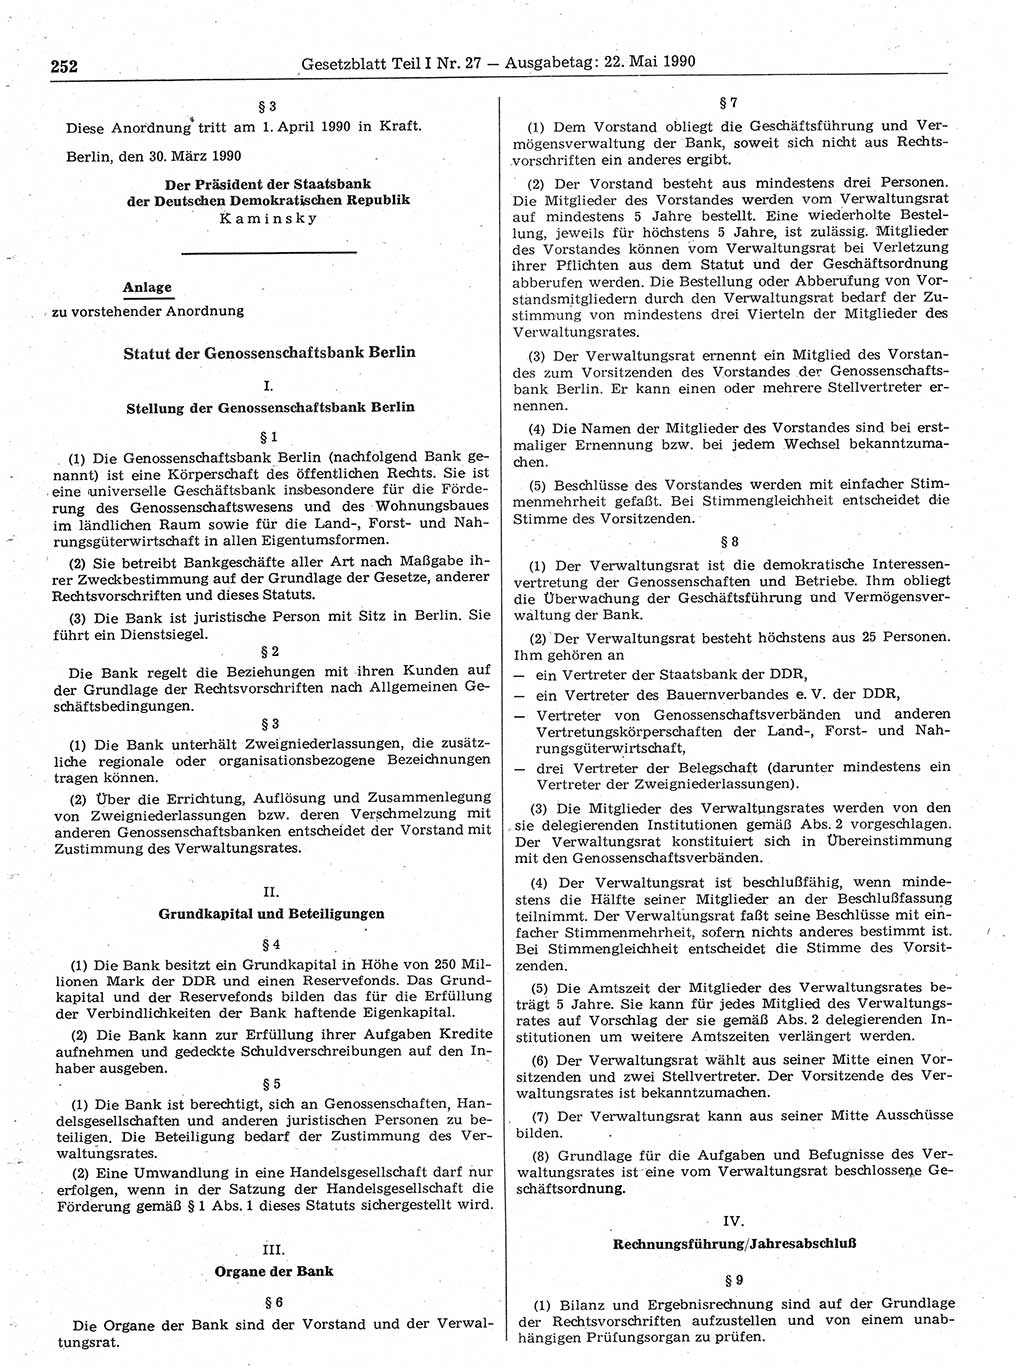 Gesetzblatt (GBl.) der Deutschen Demokratischen Republik (DDR) Teil Ⅰ 1990, Seite 252 (GBl. DDR Ⅰ 1990, S. 252)